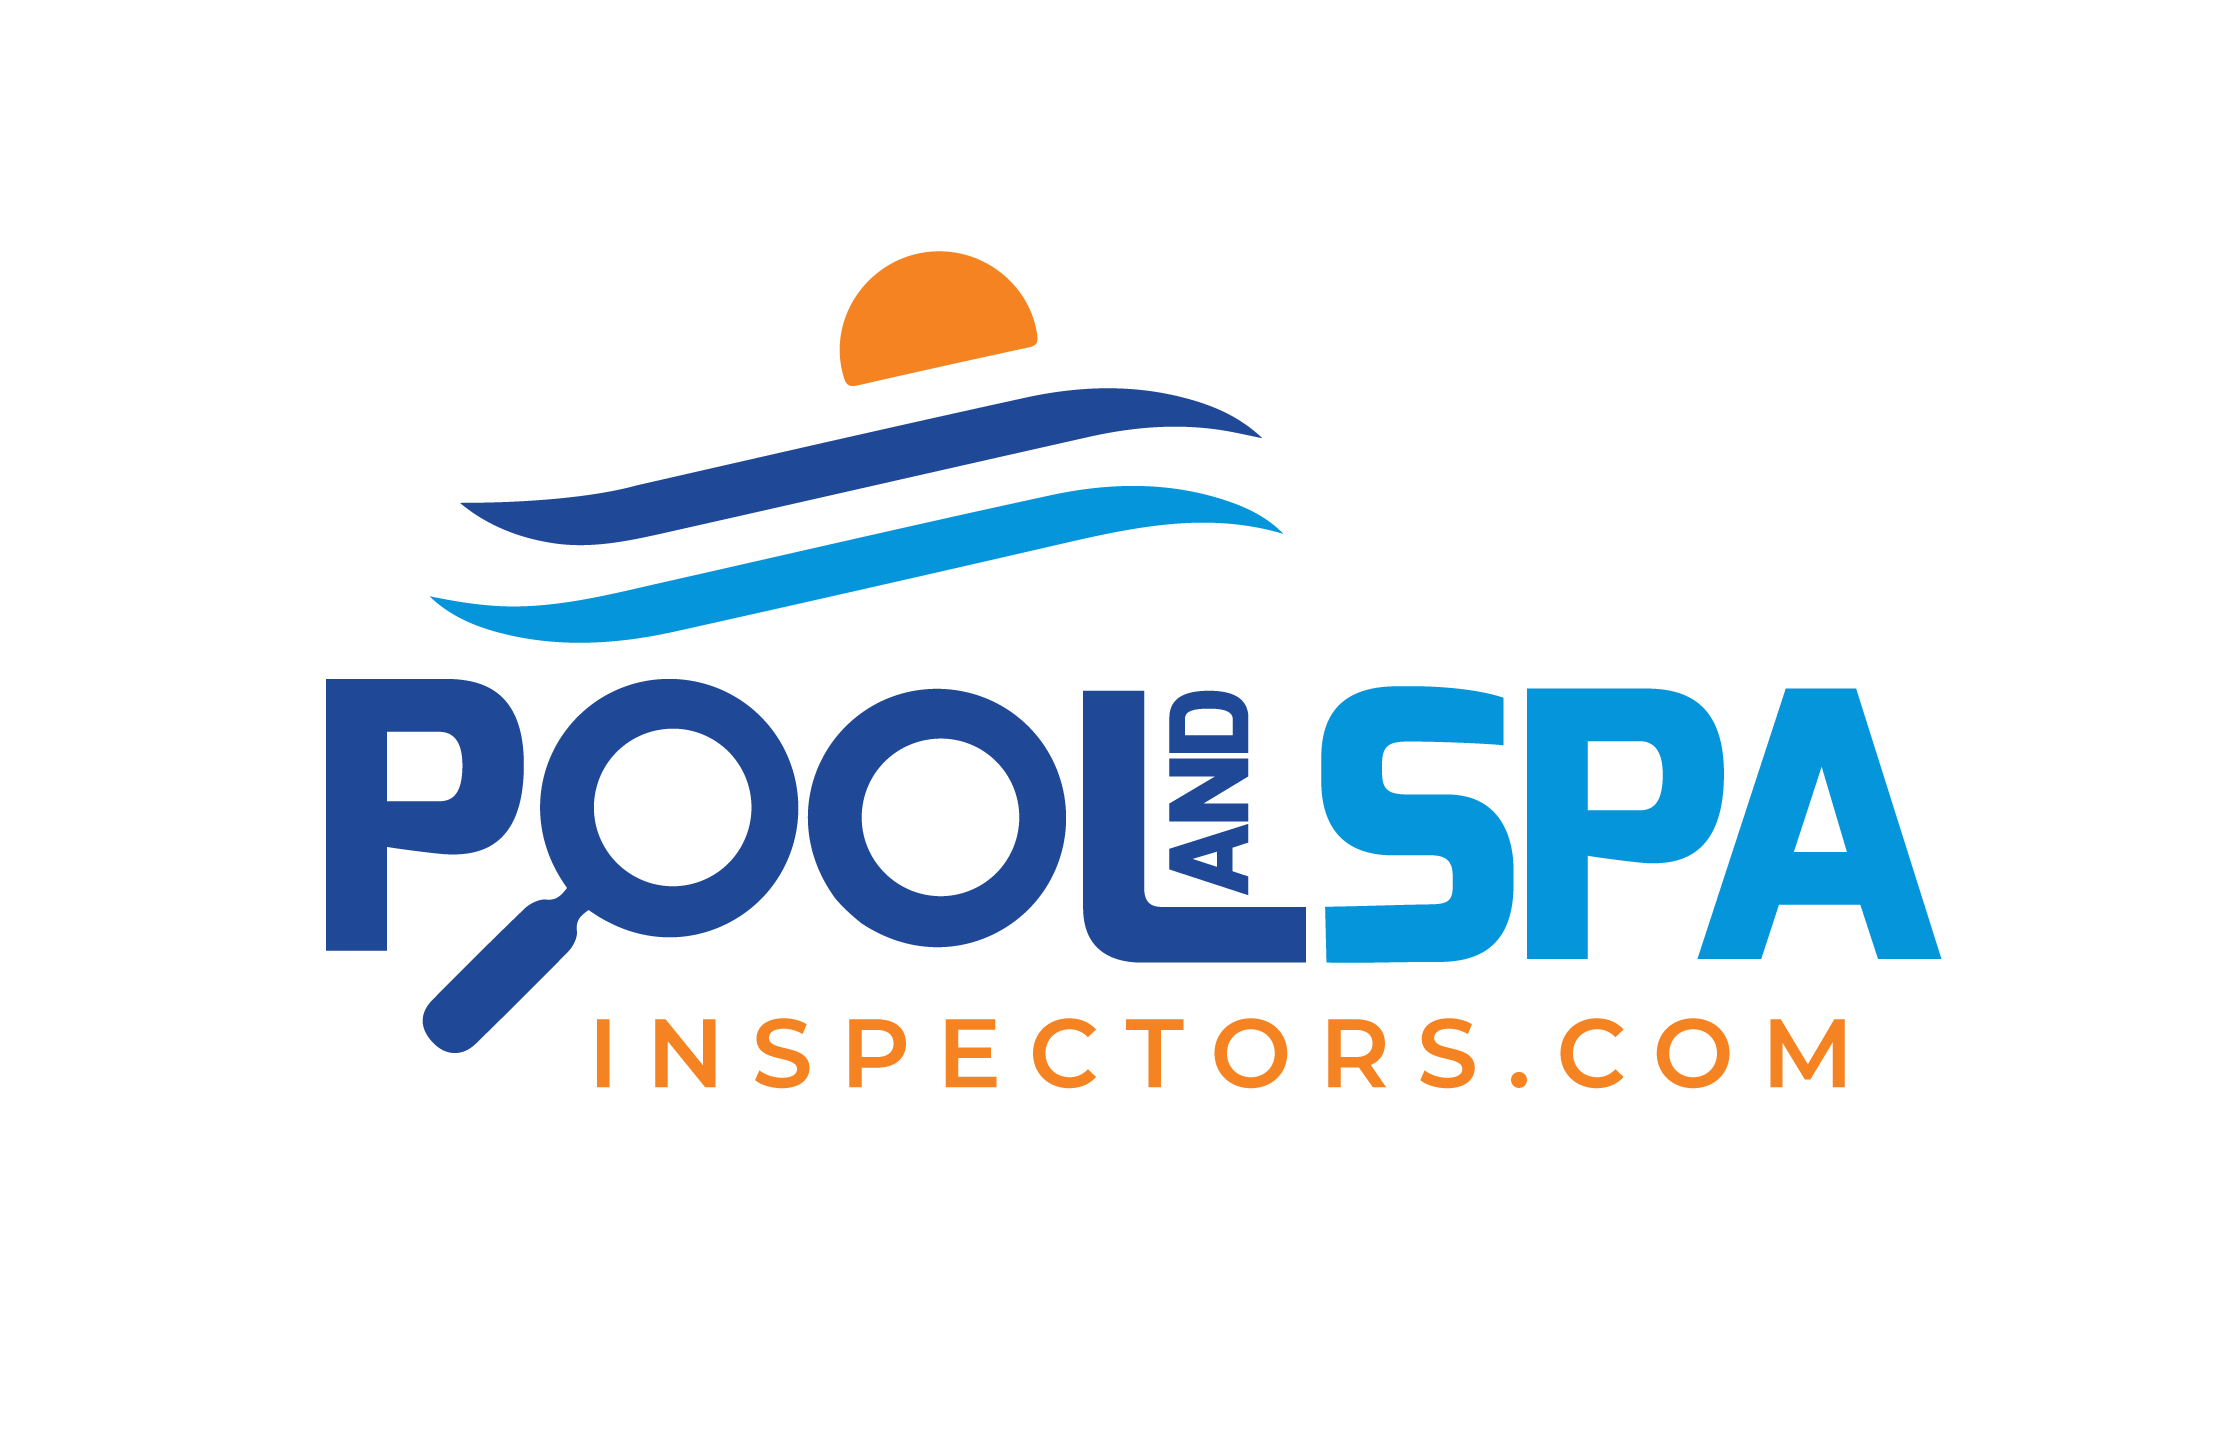 Pool & Spa Inspectors